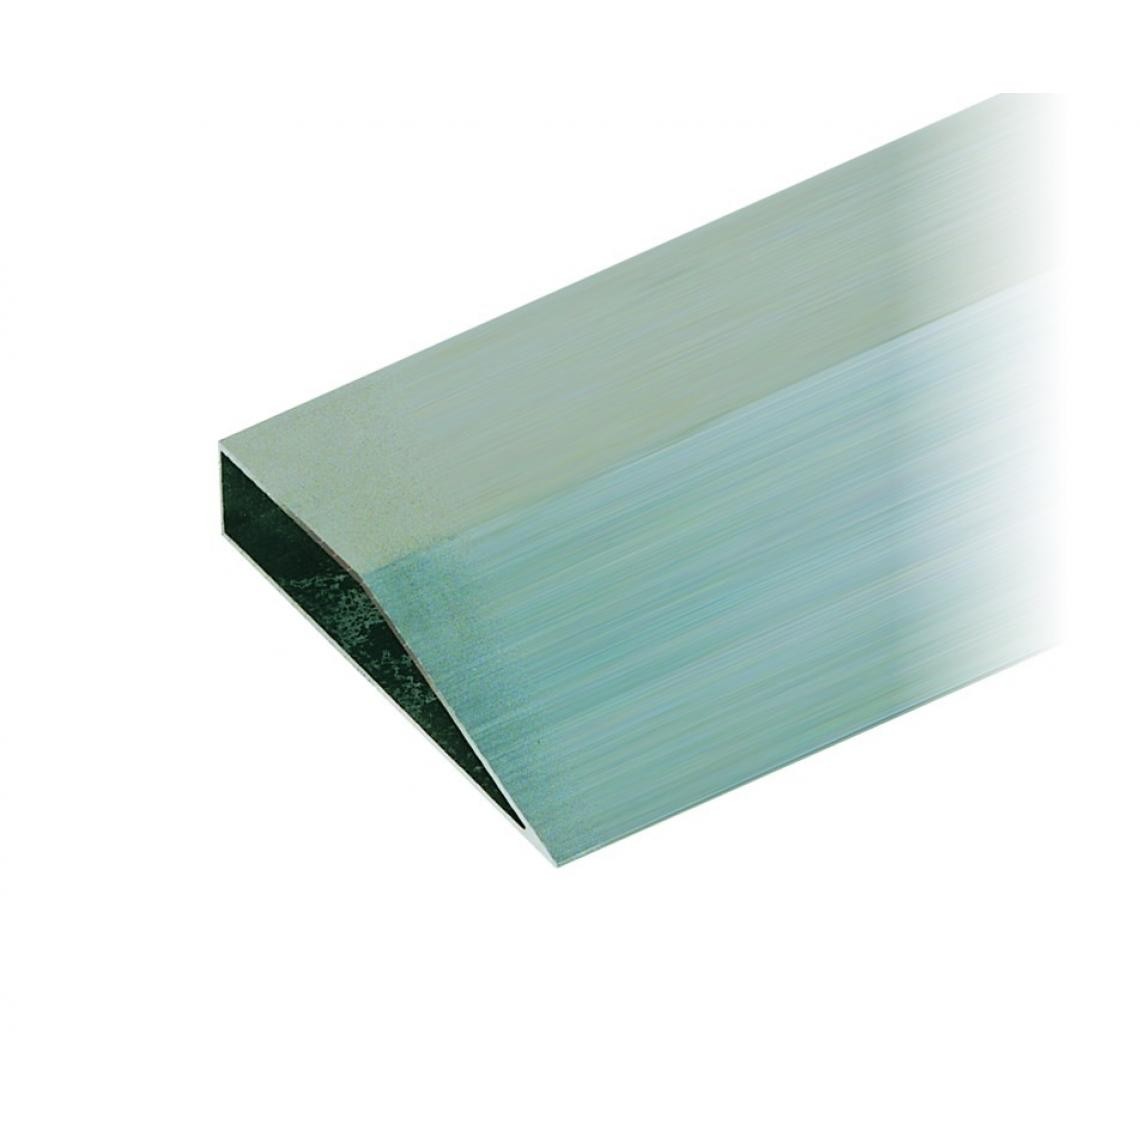 Taliaplast - Taliaplast - Règle aluminium biseautée 1 m - 380501 - Règles alu, équerres